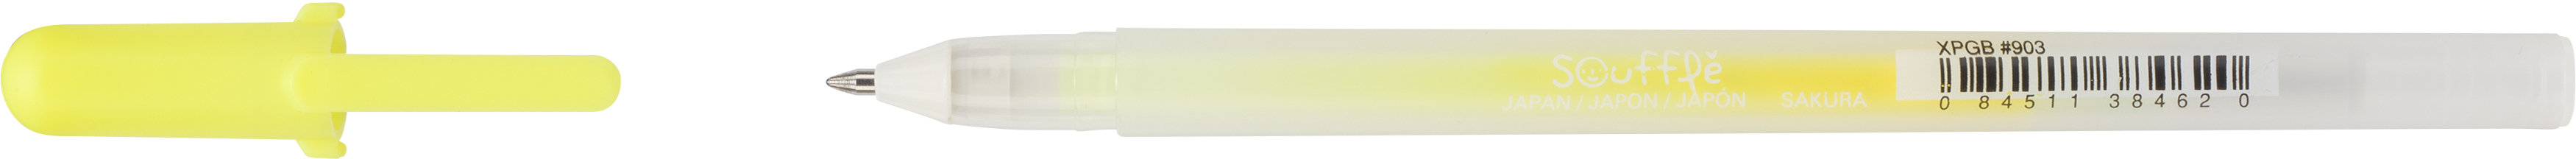 SAKURA Gelly Roll 0.7mm XPGB903 Soufflé gelb